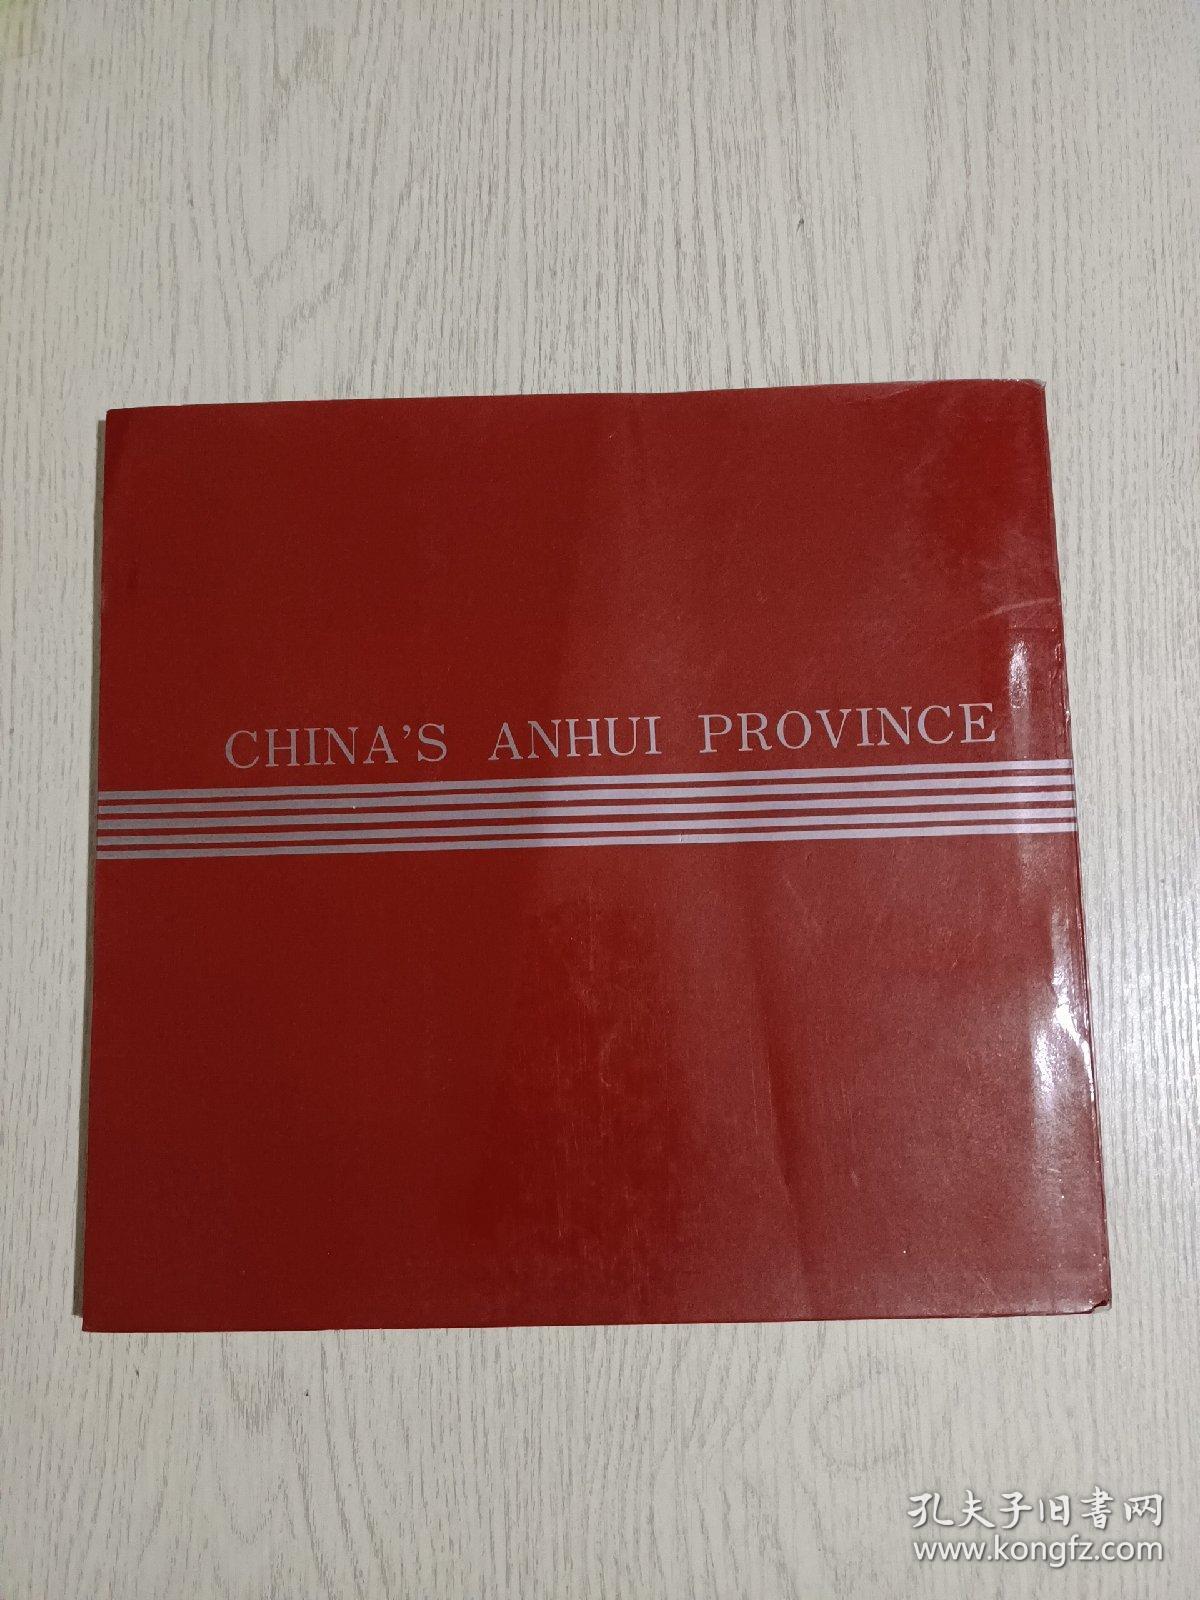 安徽老画册(80年代老画册，时代感强烈，定格历史)